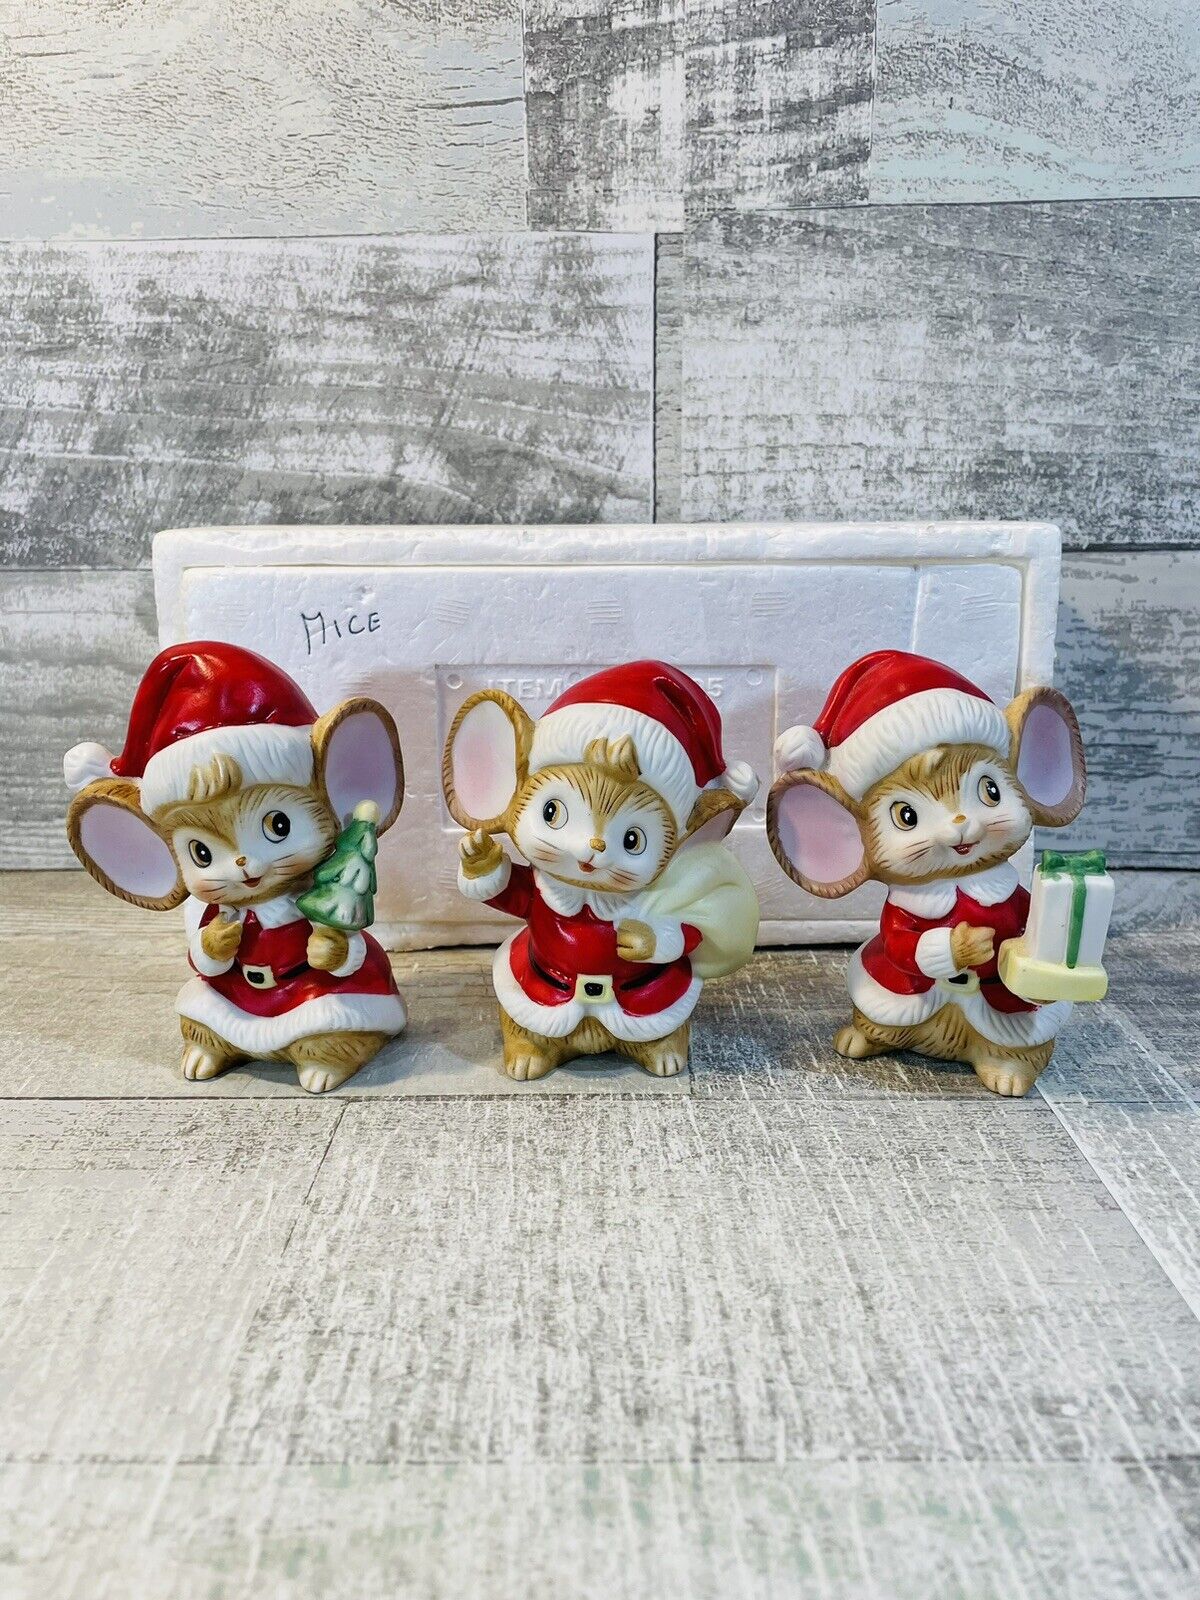 Vintage Homco Christmas Santa Mice Figurines Set Of 3  Ceramic Figurines #5405